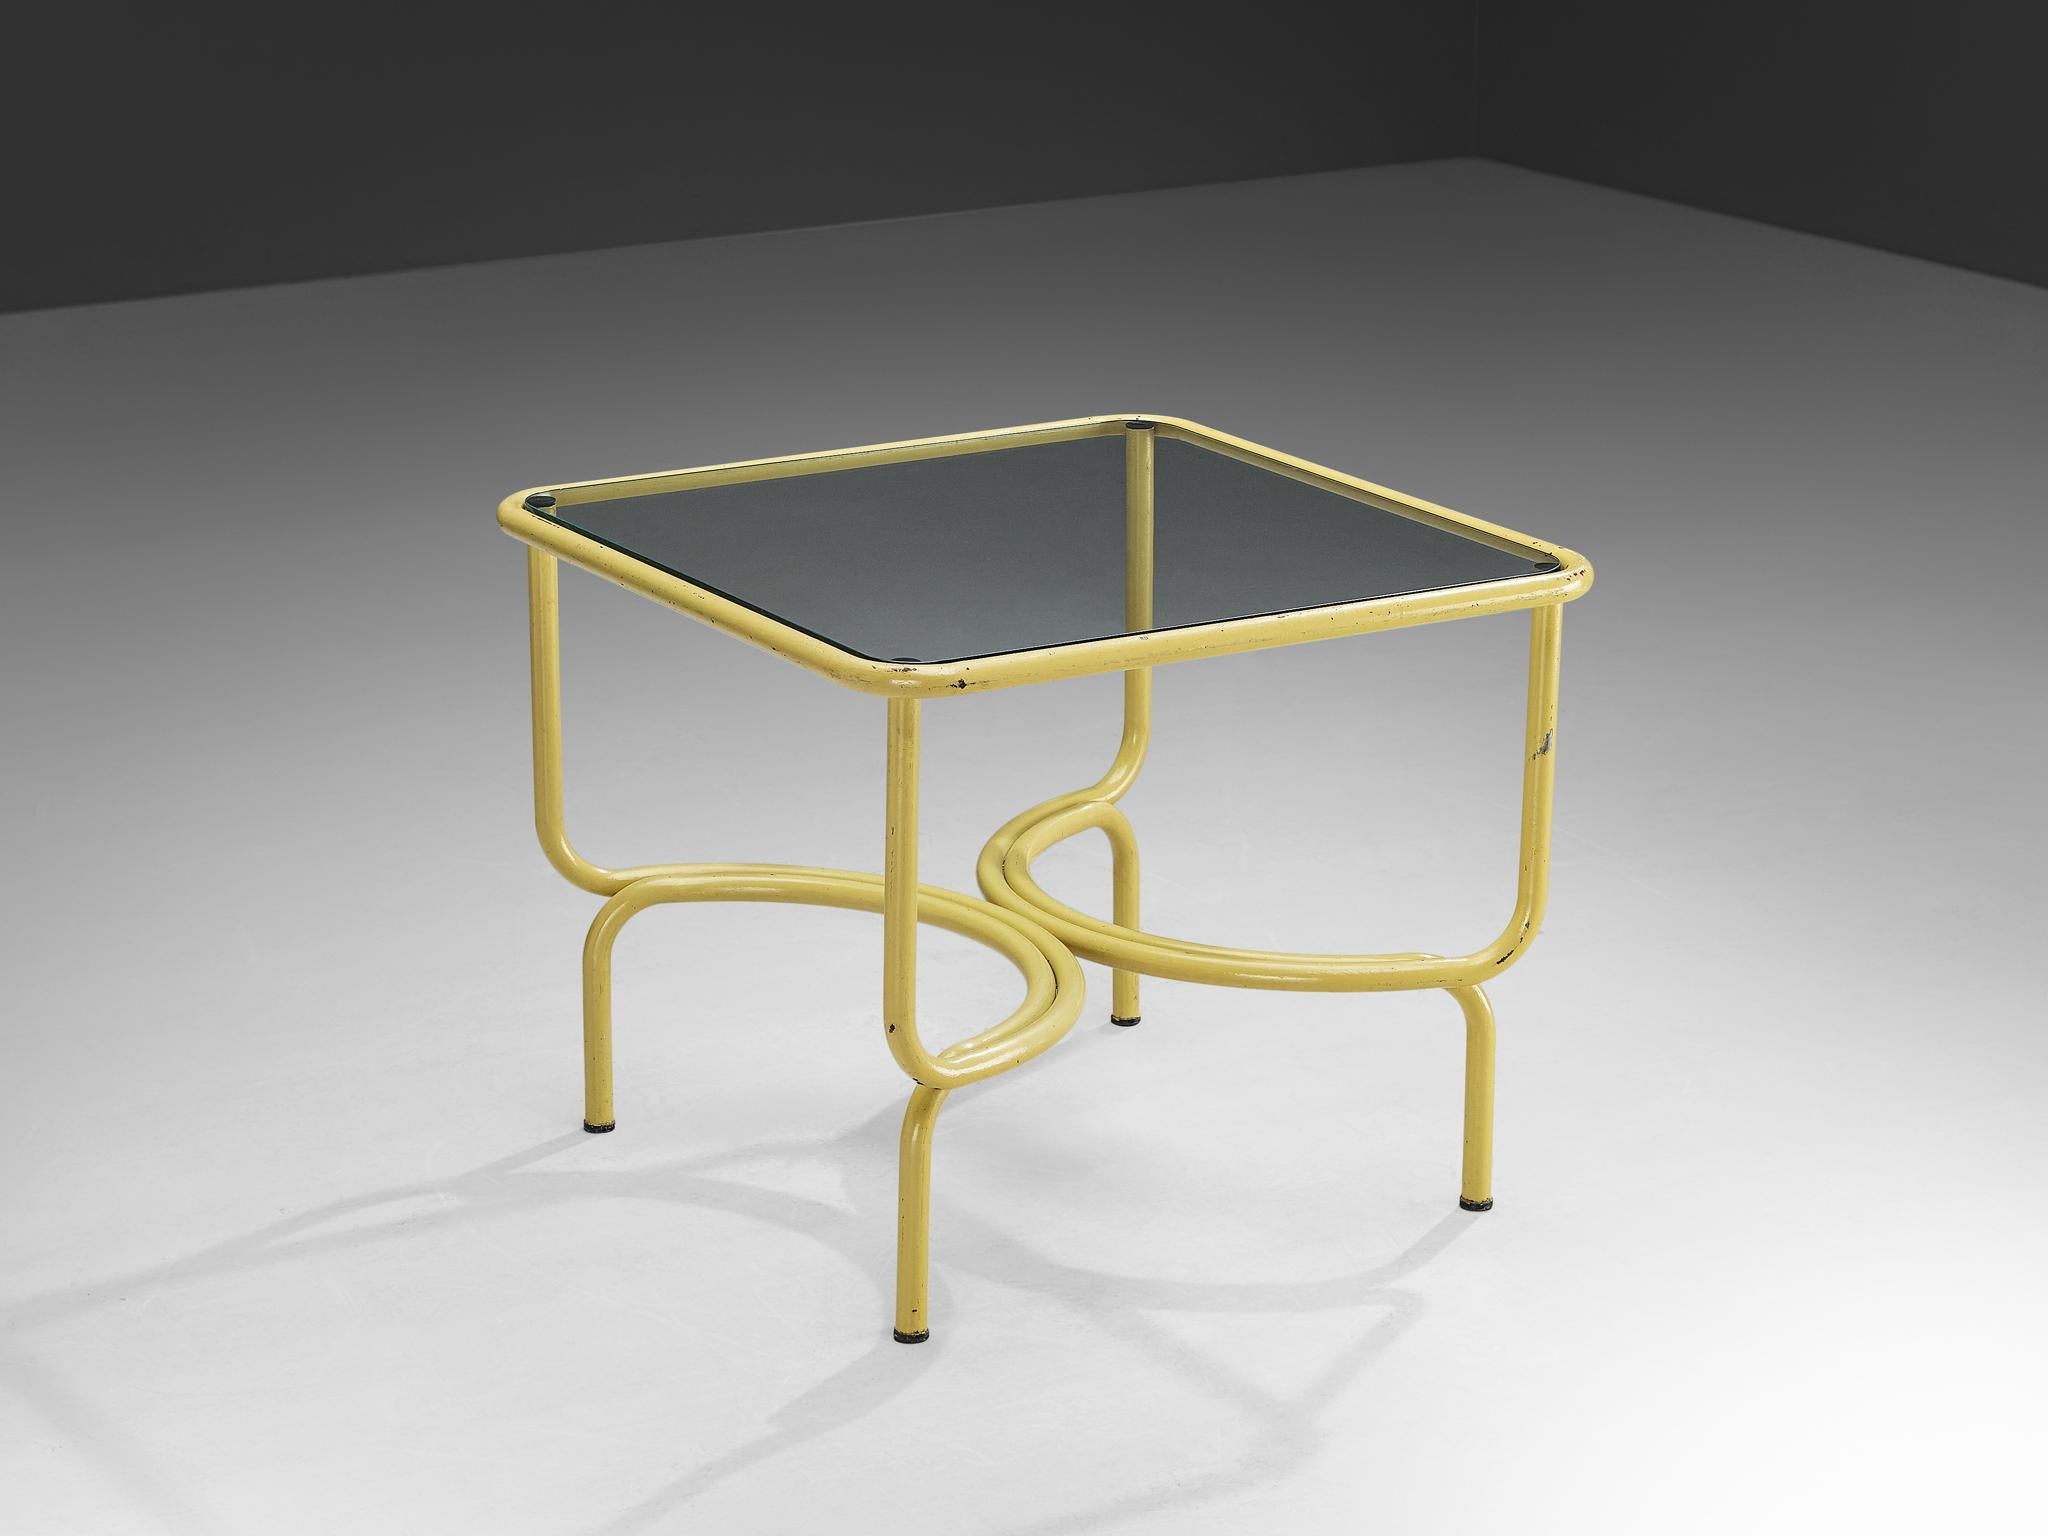 Gae Aulenti für Poltronova Locus Solus, gelb lackiertes Metall, Italien, 1963

Der Tisch Locus Solus, ein Entwurf des Visionärs Gae Aulenti aus dem Jahr 1963. Dieses ikonische Stück aus gelb lackiertem Metall ist aufregend in seiner Form und